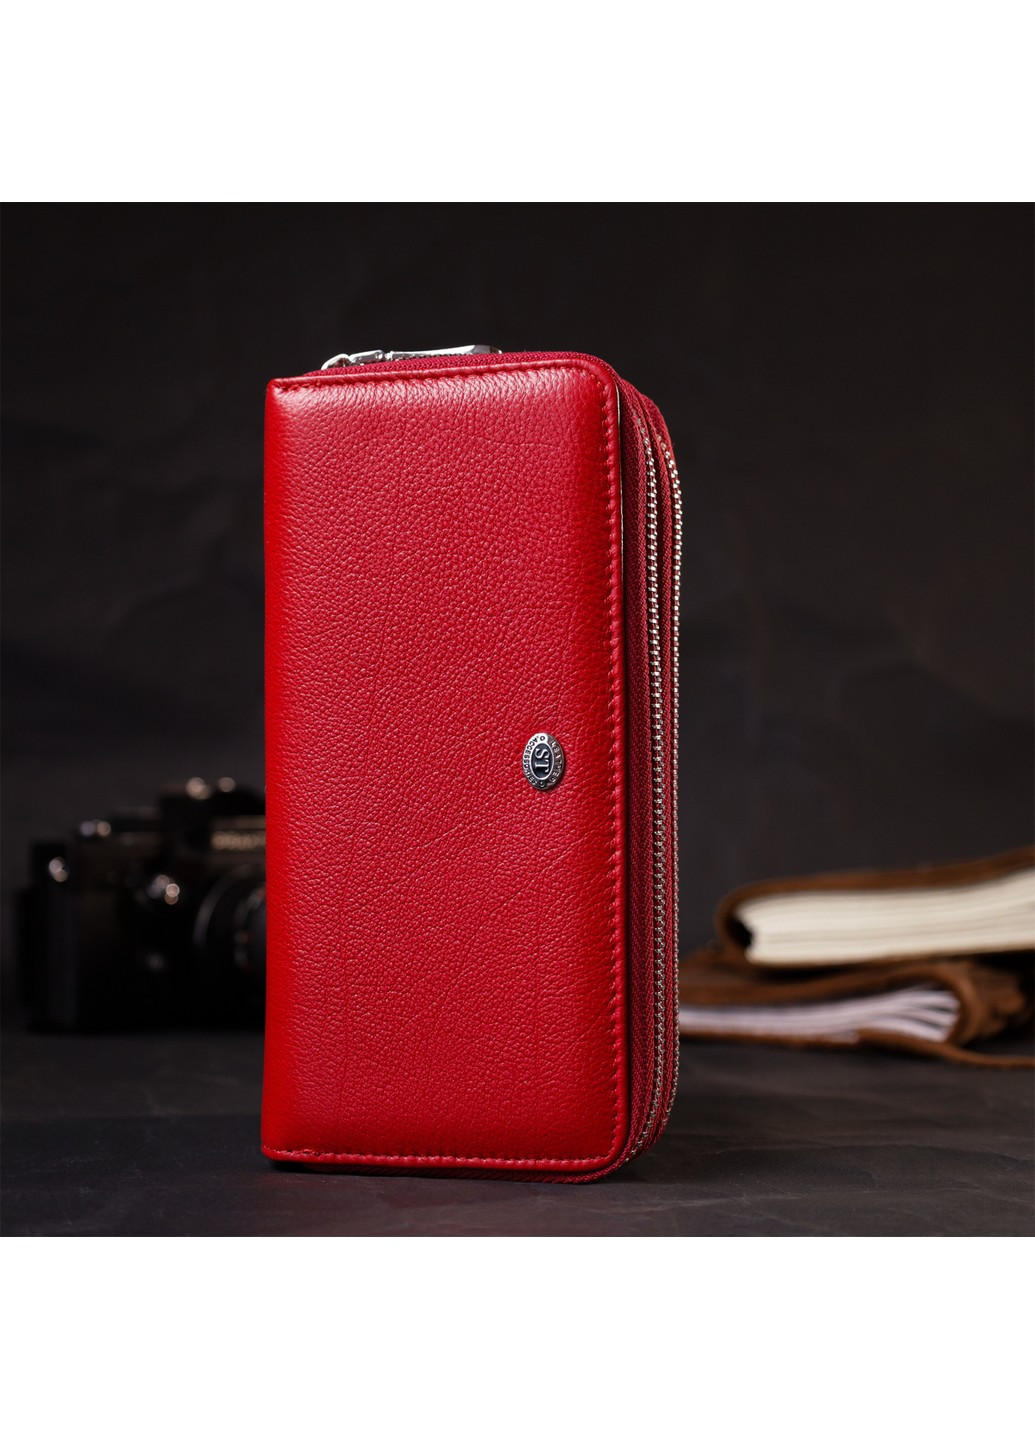 Яркий женский кошелек-клатч с двумя отделениями на молниях 19430 Красный st leather (276457466)